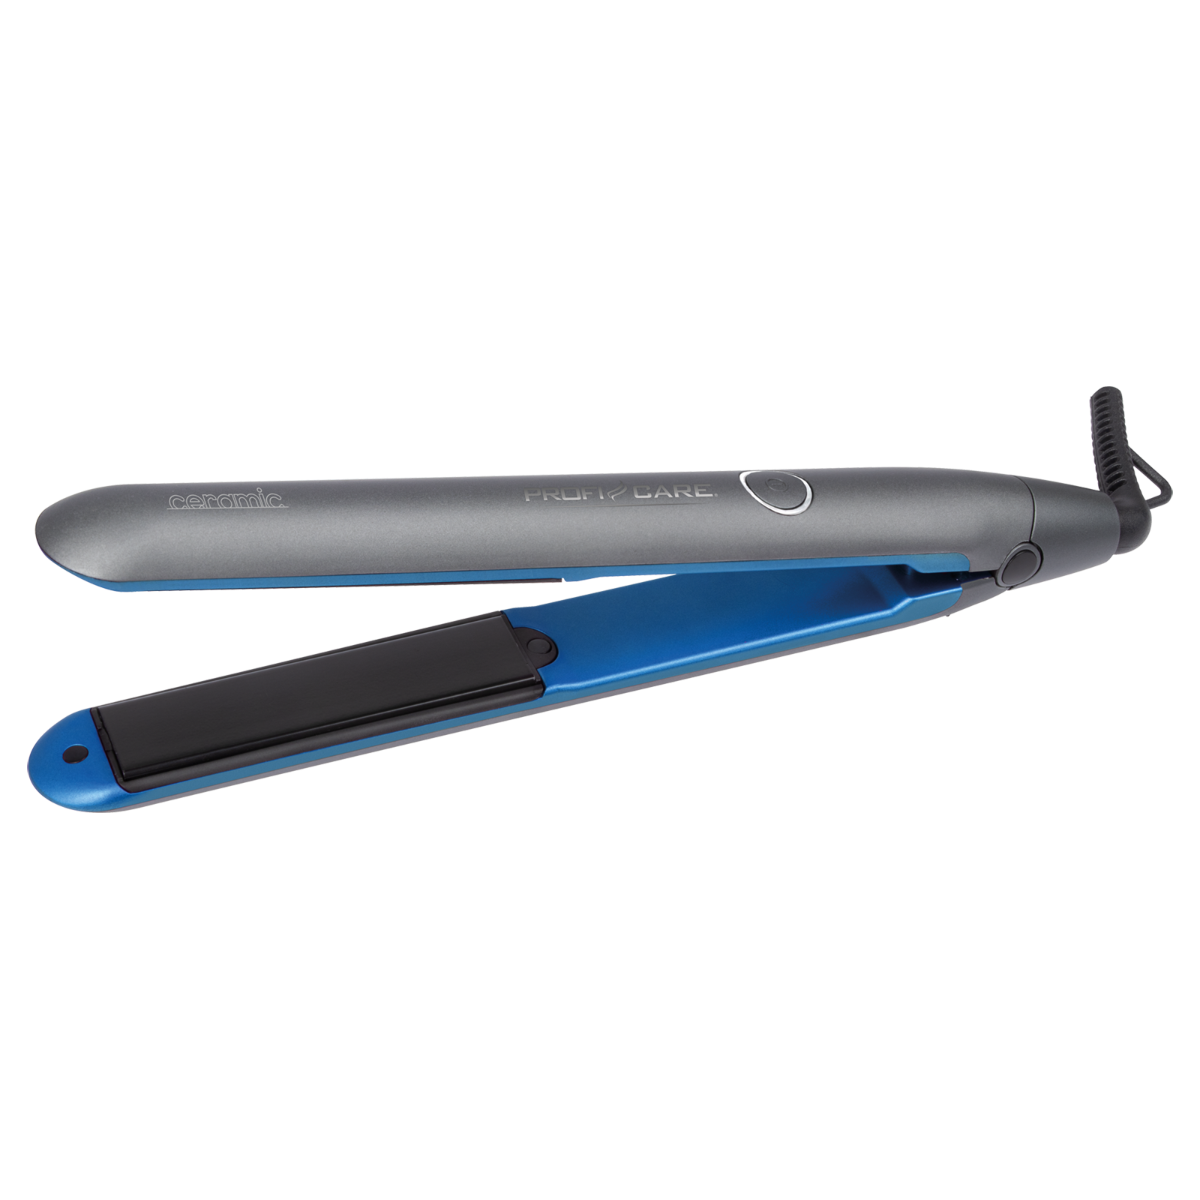 Rizador de pelo - HC 3072, Plancha de Pelo, Tecnología Cerámica, Iónica, Antiestático, Calentamiento Rápido PROFICARE, 35 W, 1 °C, Azul